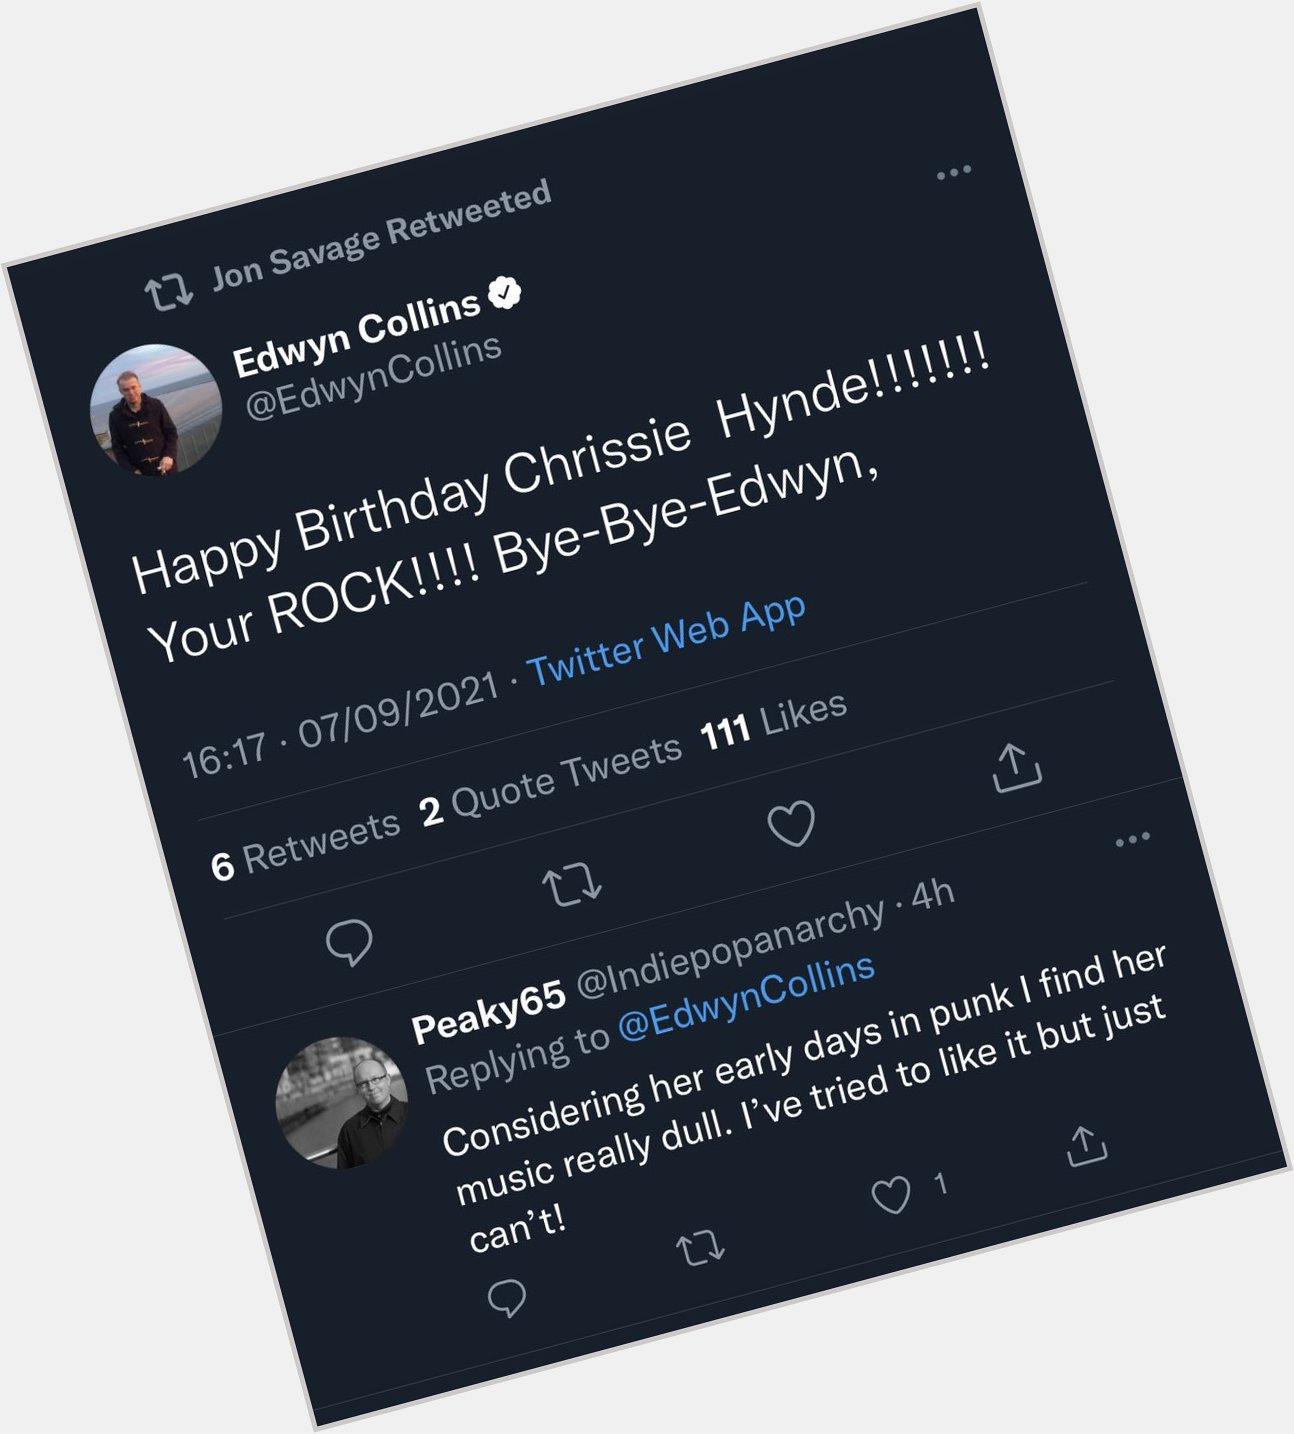 Edwyn Collins: happy birthday to Chrissie Hynde! You ROCK!!!

Man on internet: 